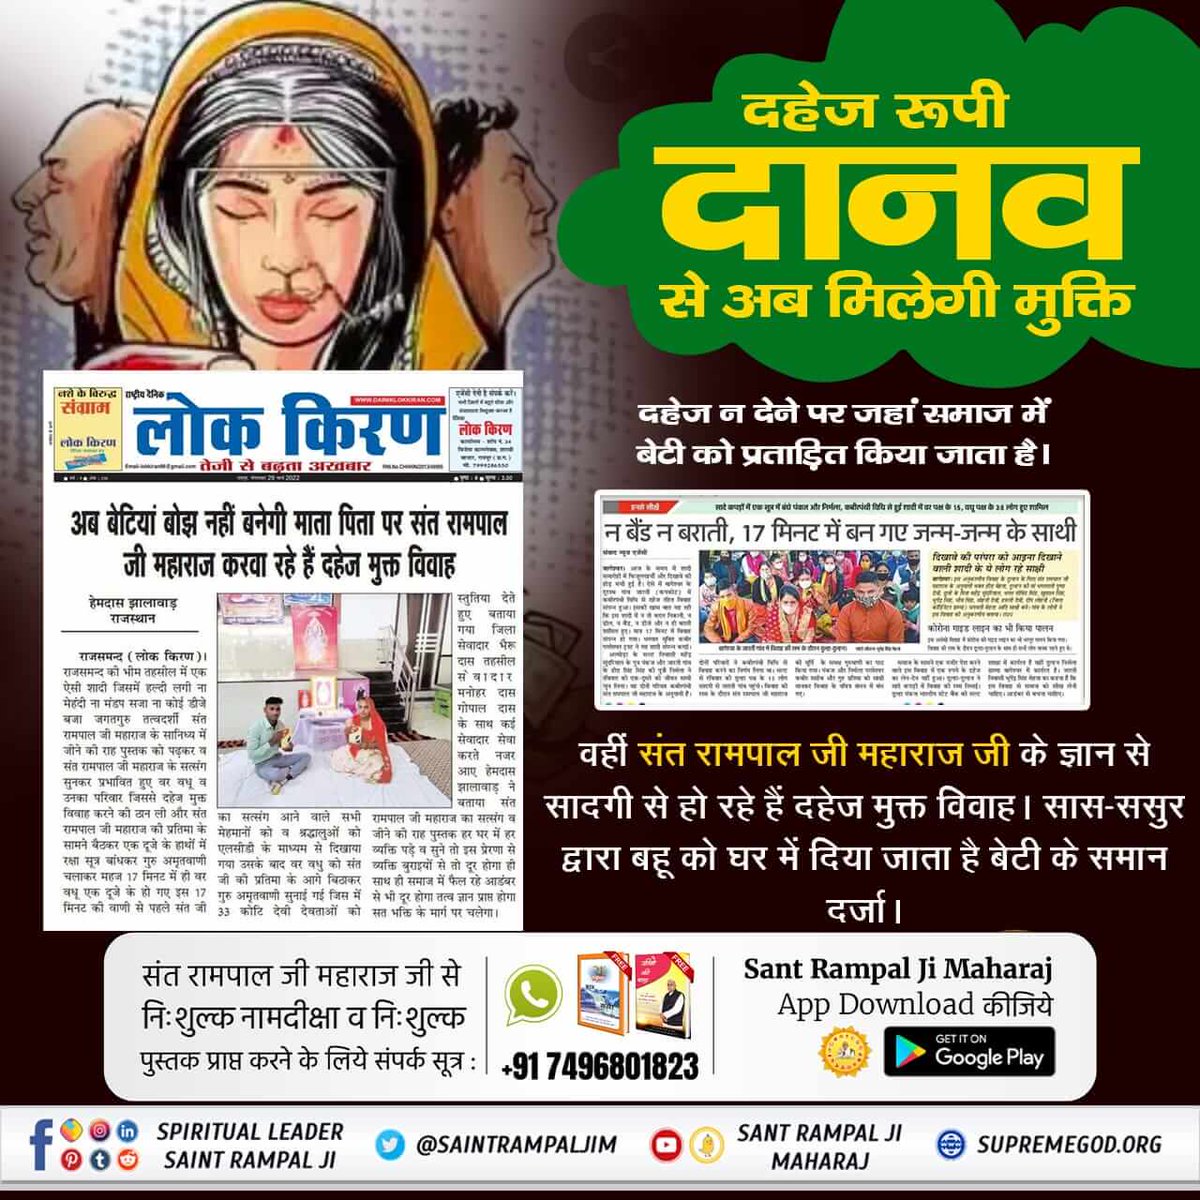 #दहेज_दानव_का_अंत_हो
दहेज के अत्याचारों से गयी बहू की जान।
अब नहीं सहेंगी बेटियाँ दहेज का अपमान।
Sant Rampal Ji Maharaj